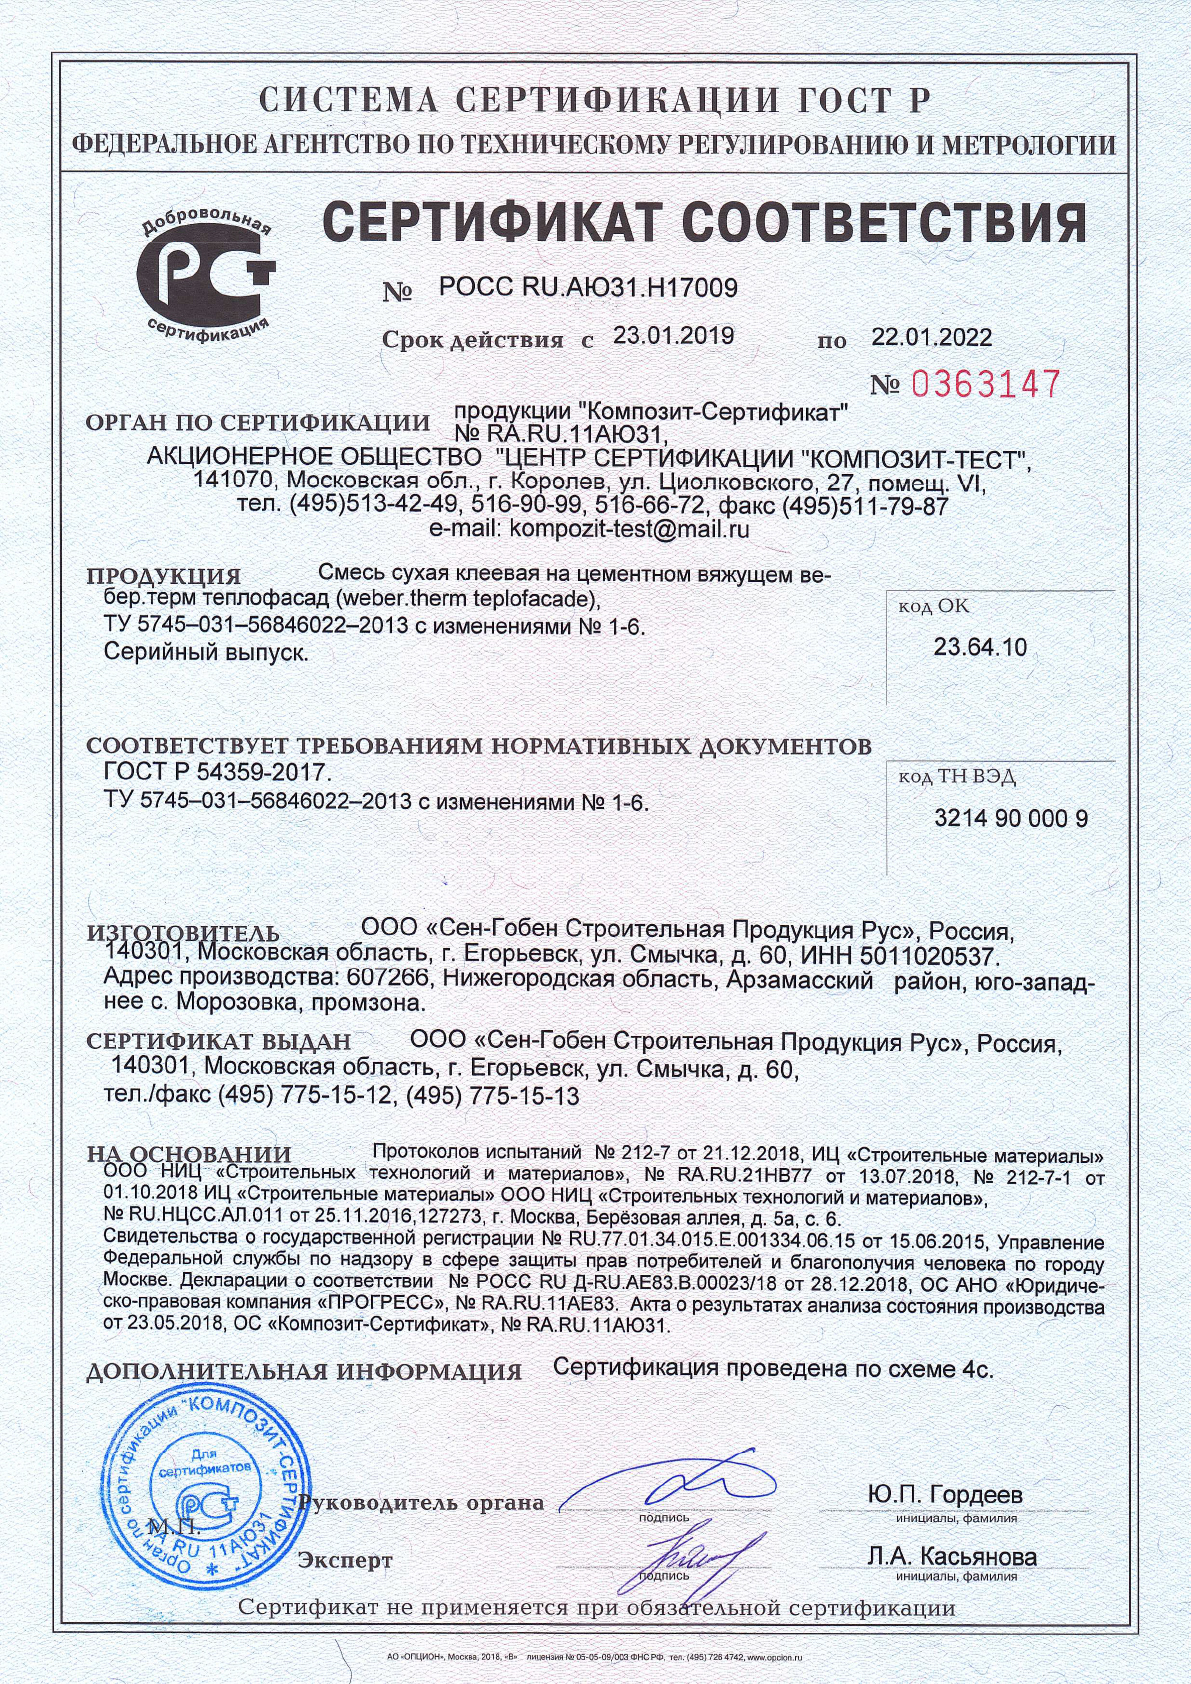 Сертификат cоответствия на смесь сухая строительная на цементном вяжущем вебер.терм теплофасад срок действия до 22.01.2022